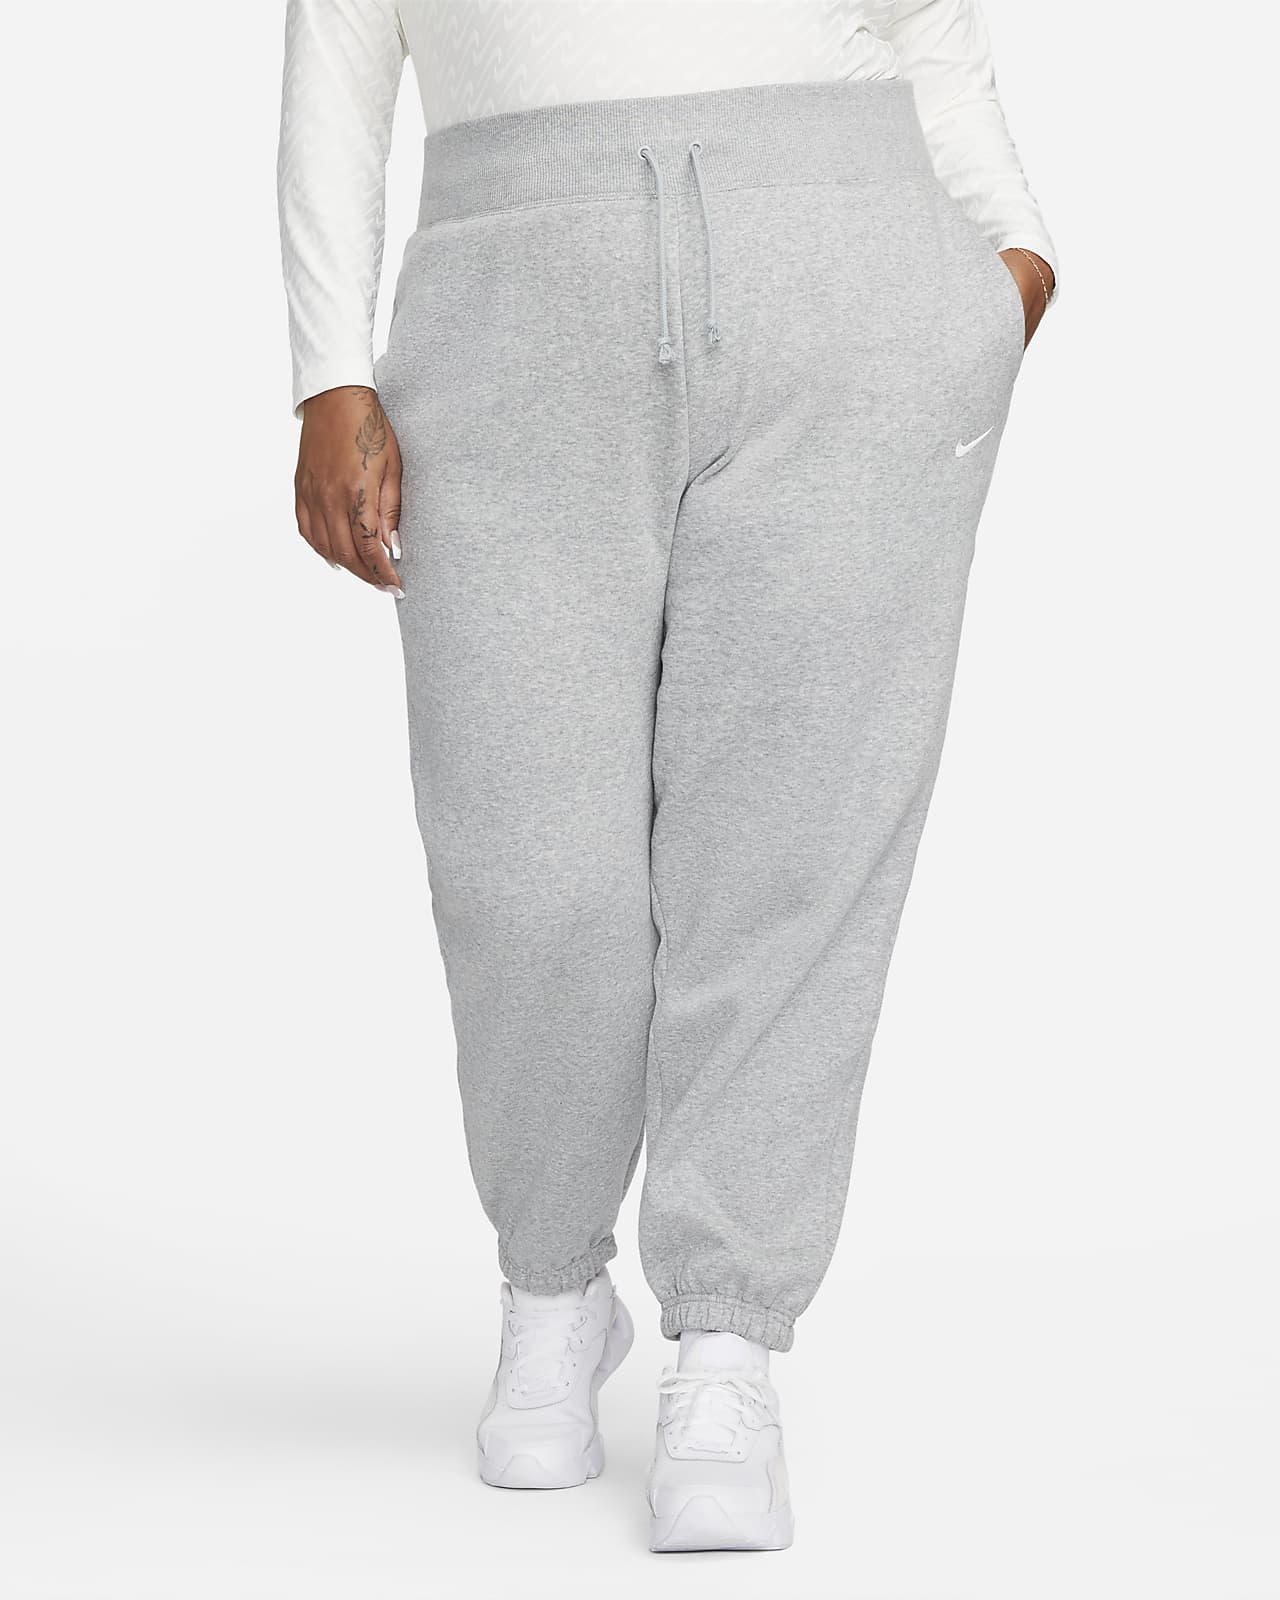 Nike Sportswear Phoenix Fleece magas derekú, túlméretes női melegítőnadrág (plus size méret)